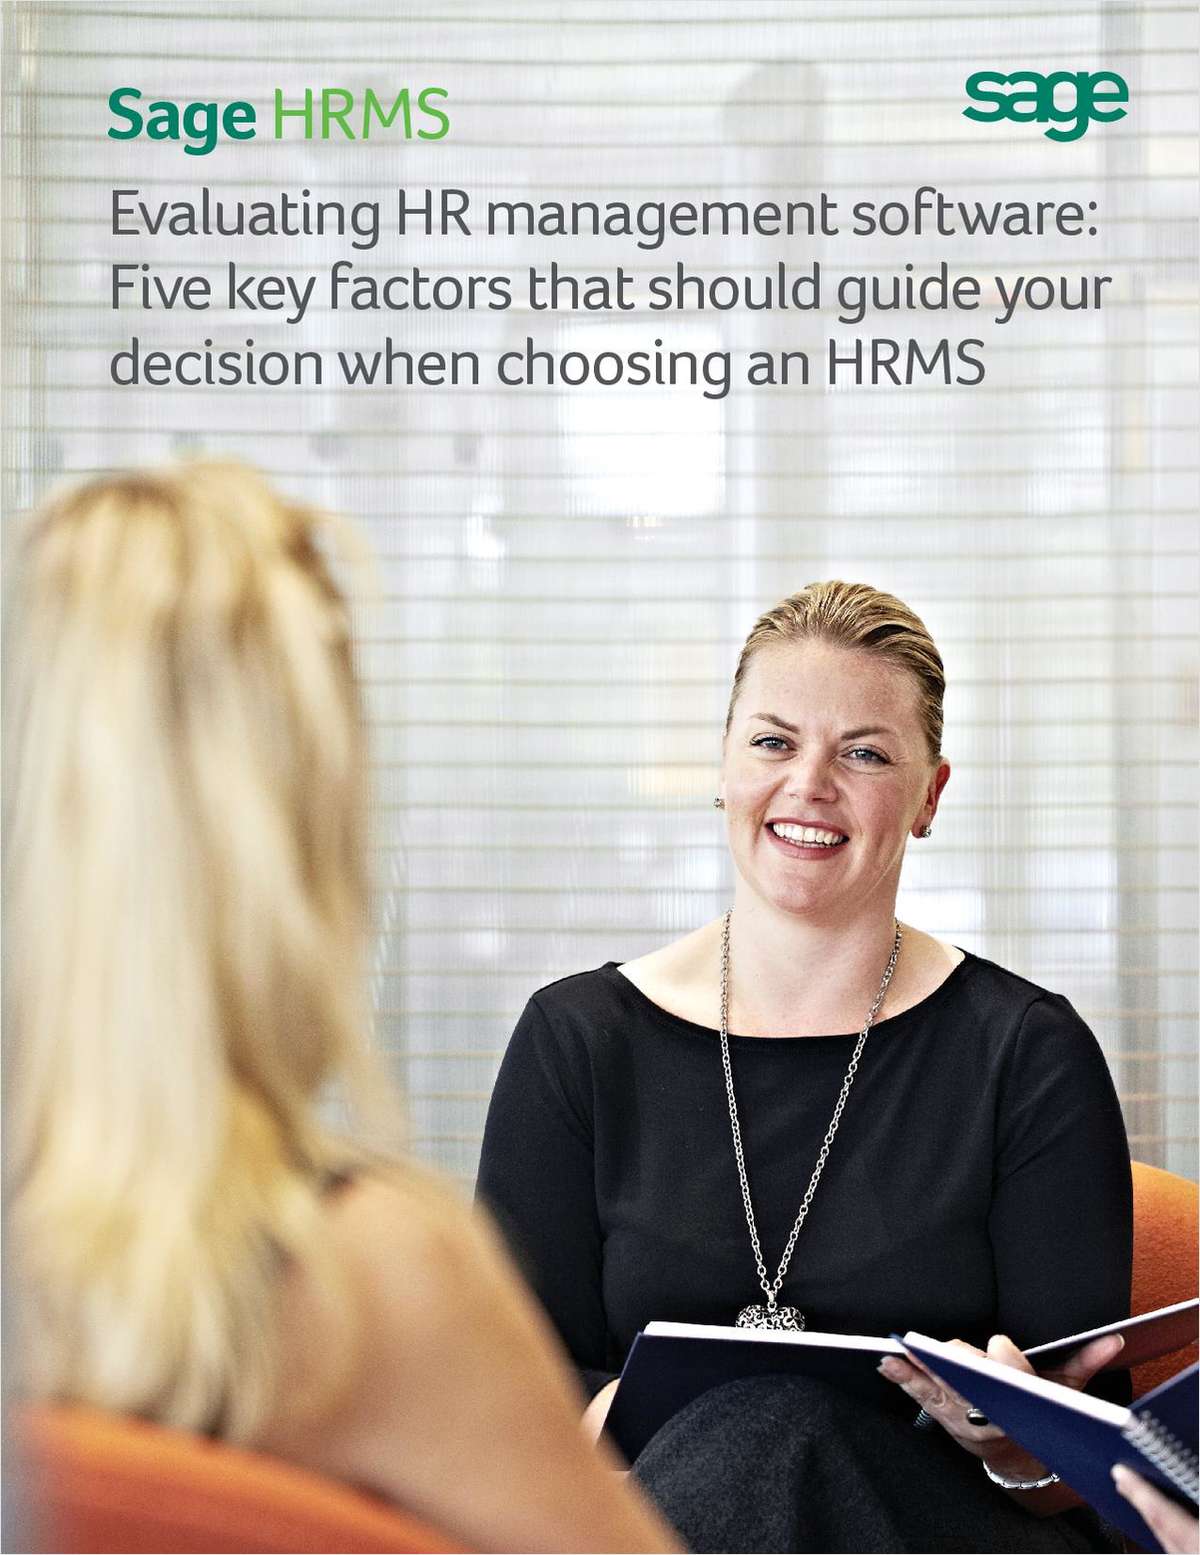 Five Key Factors that Should Guide Your Decision When Choosing HR Management Software